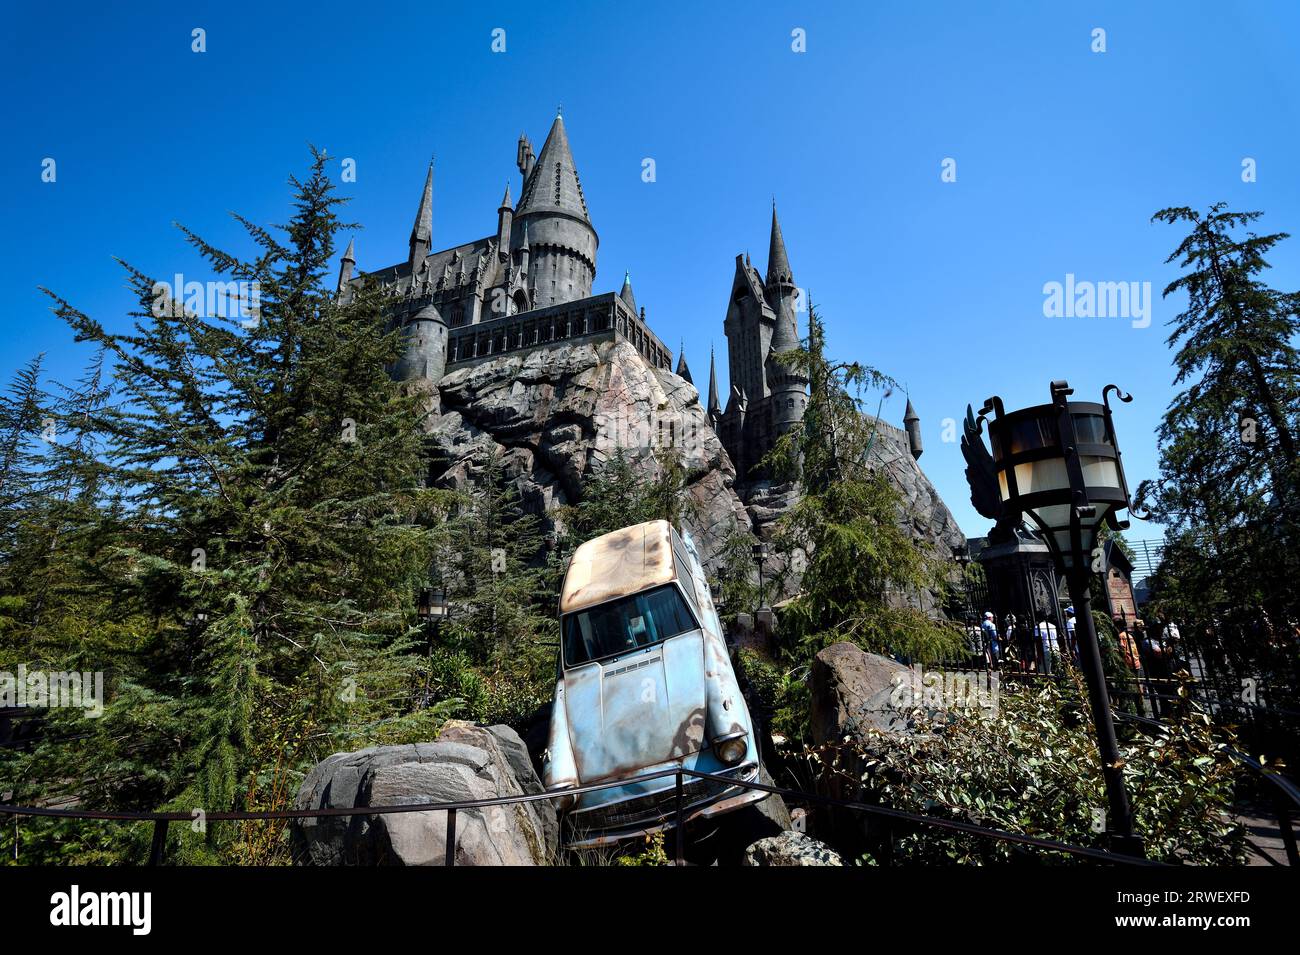 Réplique du château de Poudlard au Wizarding World de Harry Potter dans Universal Studios Hollywood - Los Angeles, Californie Banque D'Images